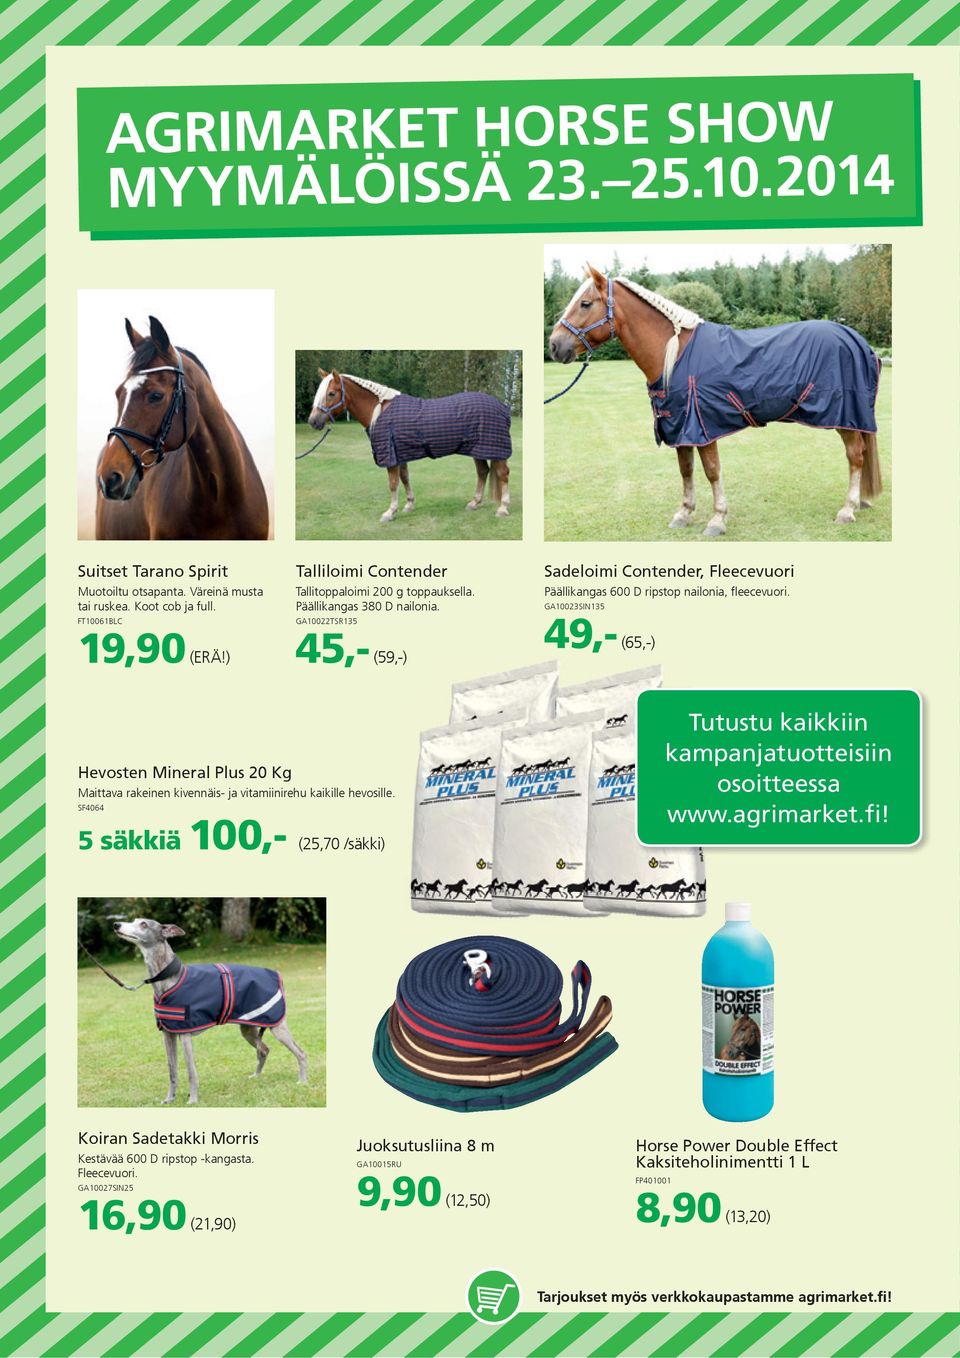 GA10023SIN135 49,- (65,-) Hevosten Mineral Plus 20 Kg Maittava rakeinen kivennäis- ja vitamiinirehu kaikille hevosille.